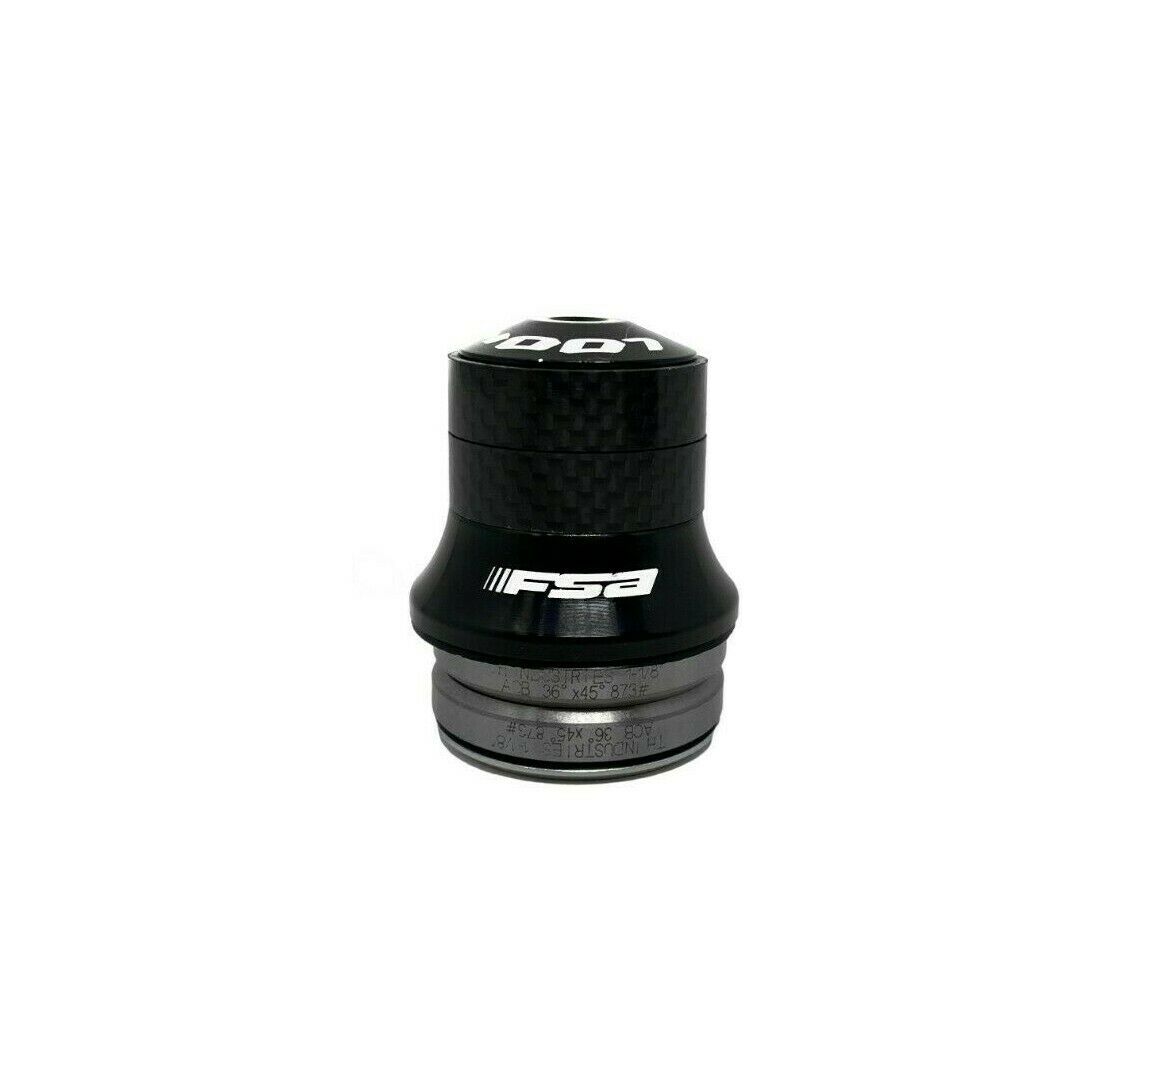 Look FSA Integrated 41mm Carbon Headset - 1 1/8" Steerer - Sportandleisure.com (7120731734170)